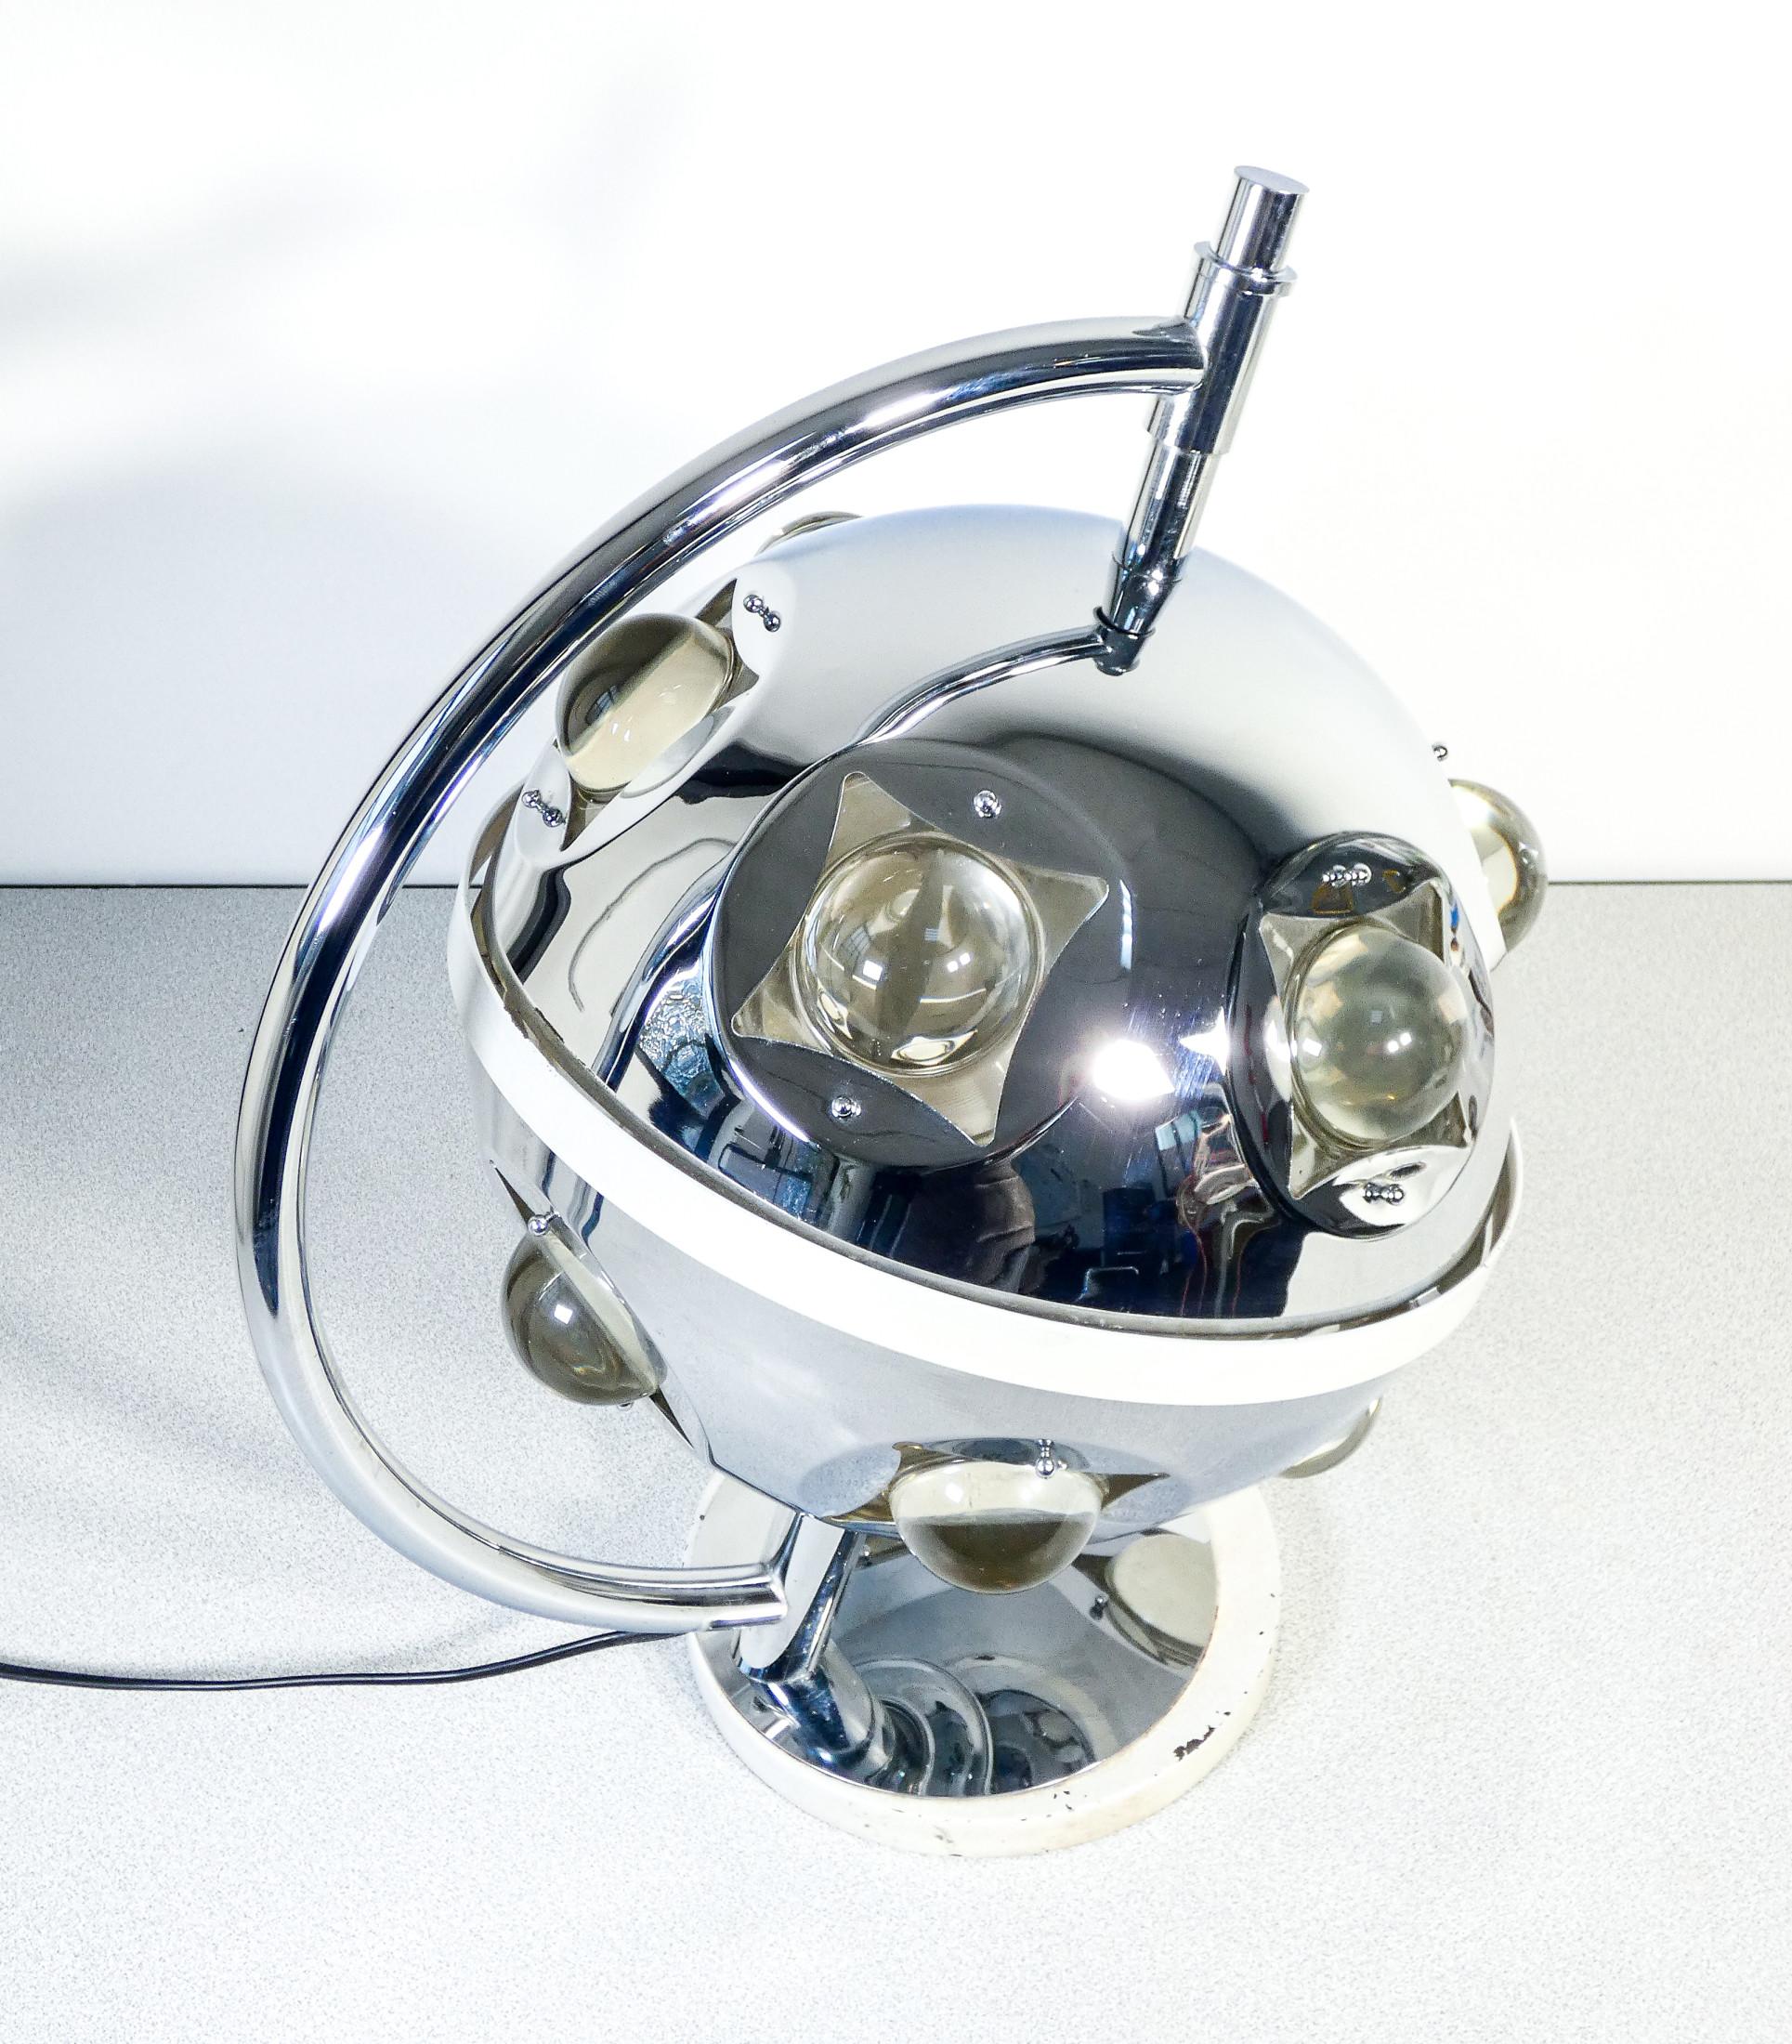 Mid-20th Century Table Lamp, Design by Oscar Torlasco for Stilkronen, 1960s/70s